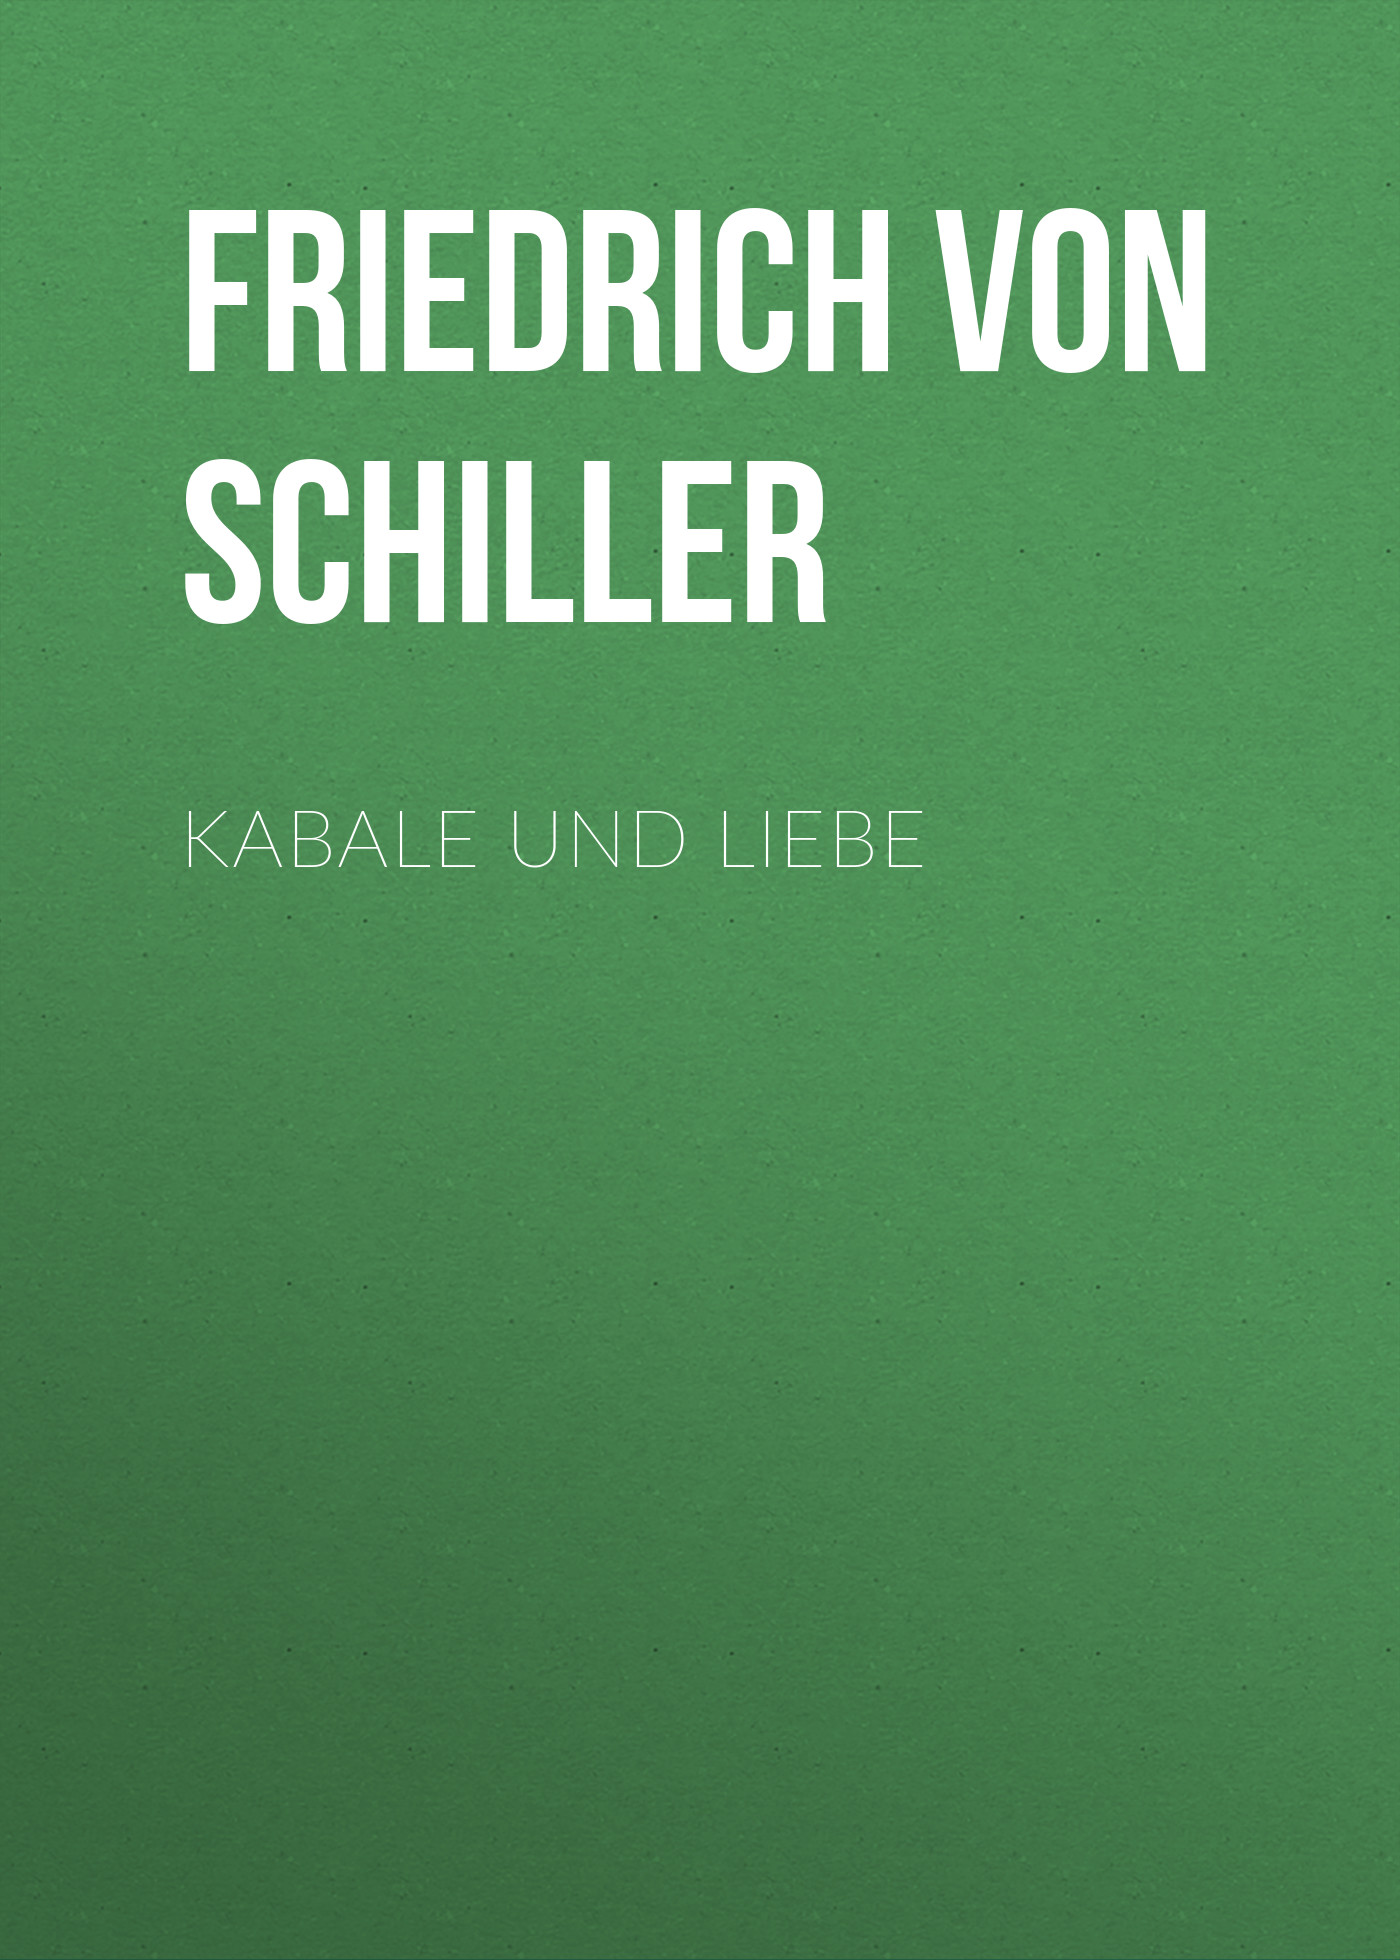 Книга Kabale und Liebe из серии , созданная Friedrich Schiller, может относится к жанру Литература 18 века, Драматургия, Зарубежная старинная литература, Зарубежная классика, Зарубежная драматургия. Стоимость электронной книги Kabale und Liebe с идентификатором 25449524 составляет 0 руб.